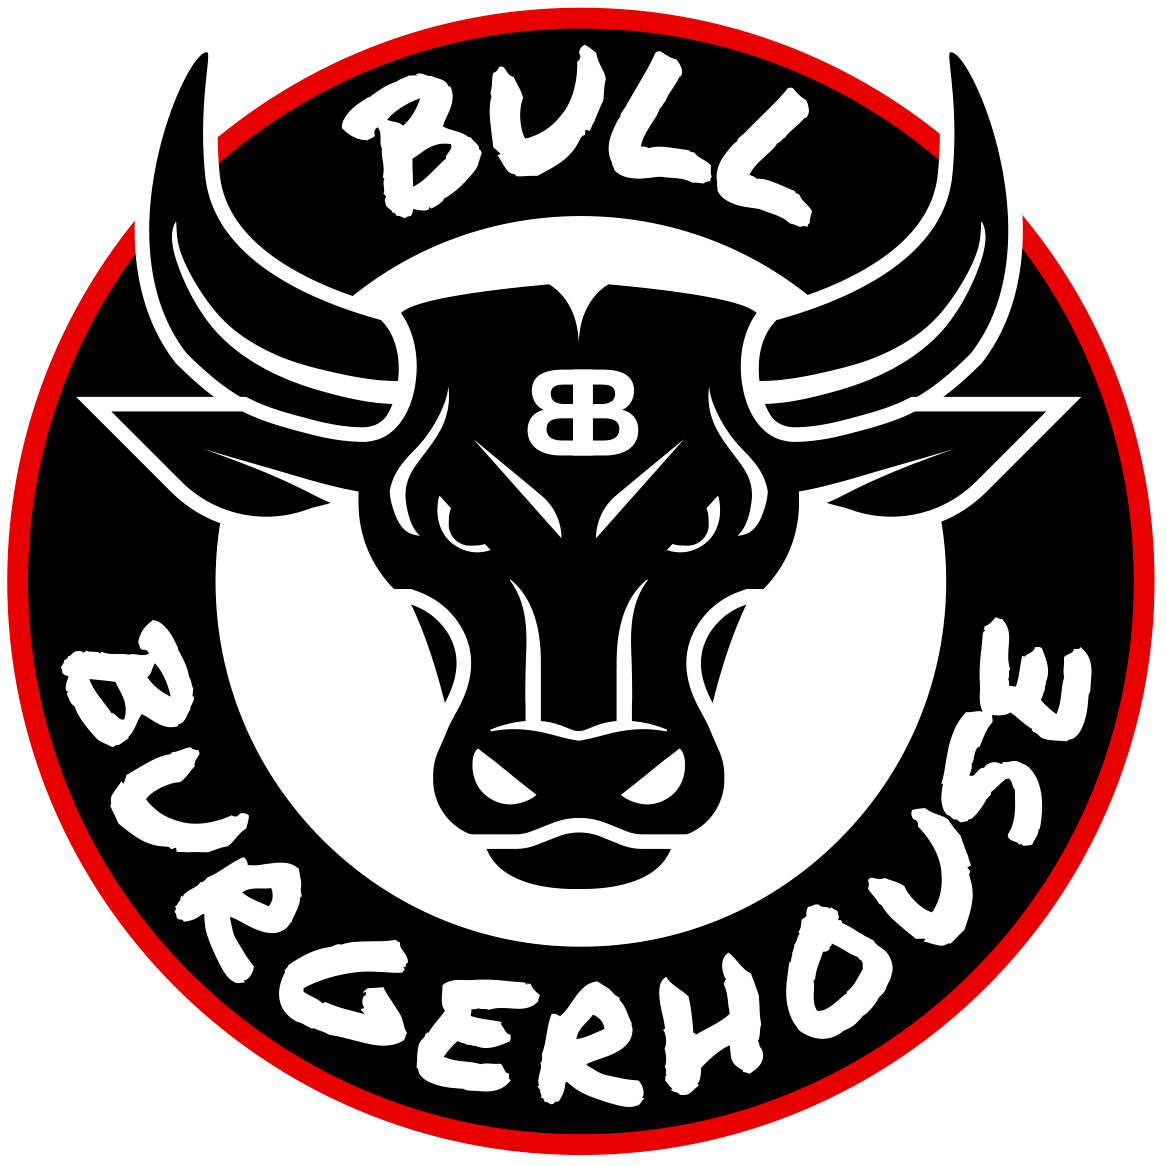 Bull Burgerhouse